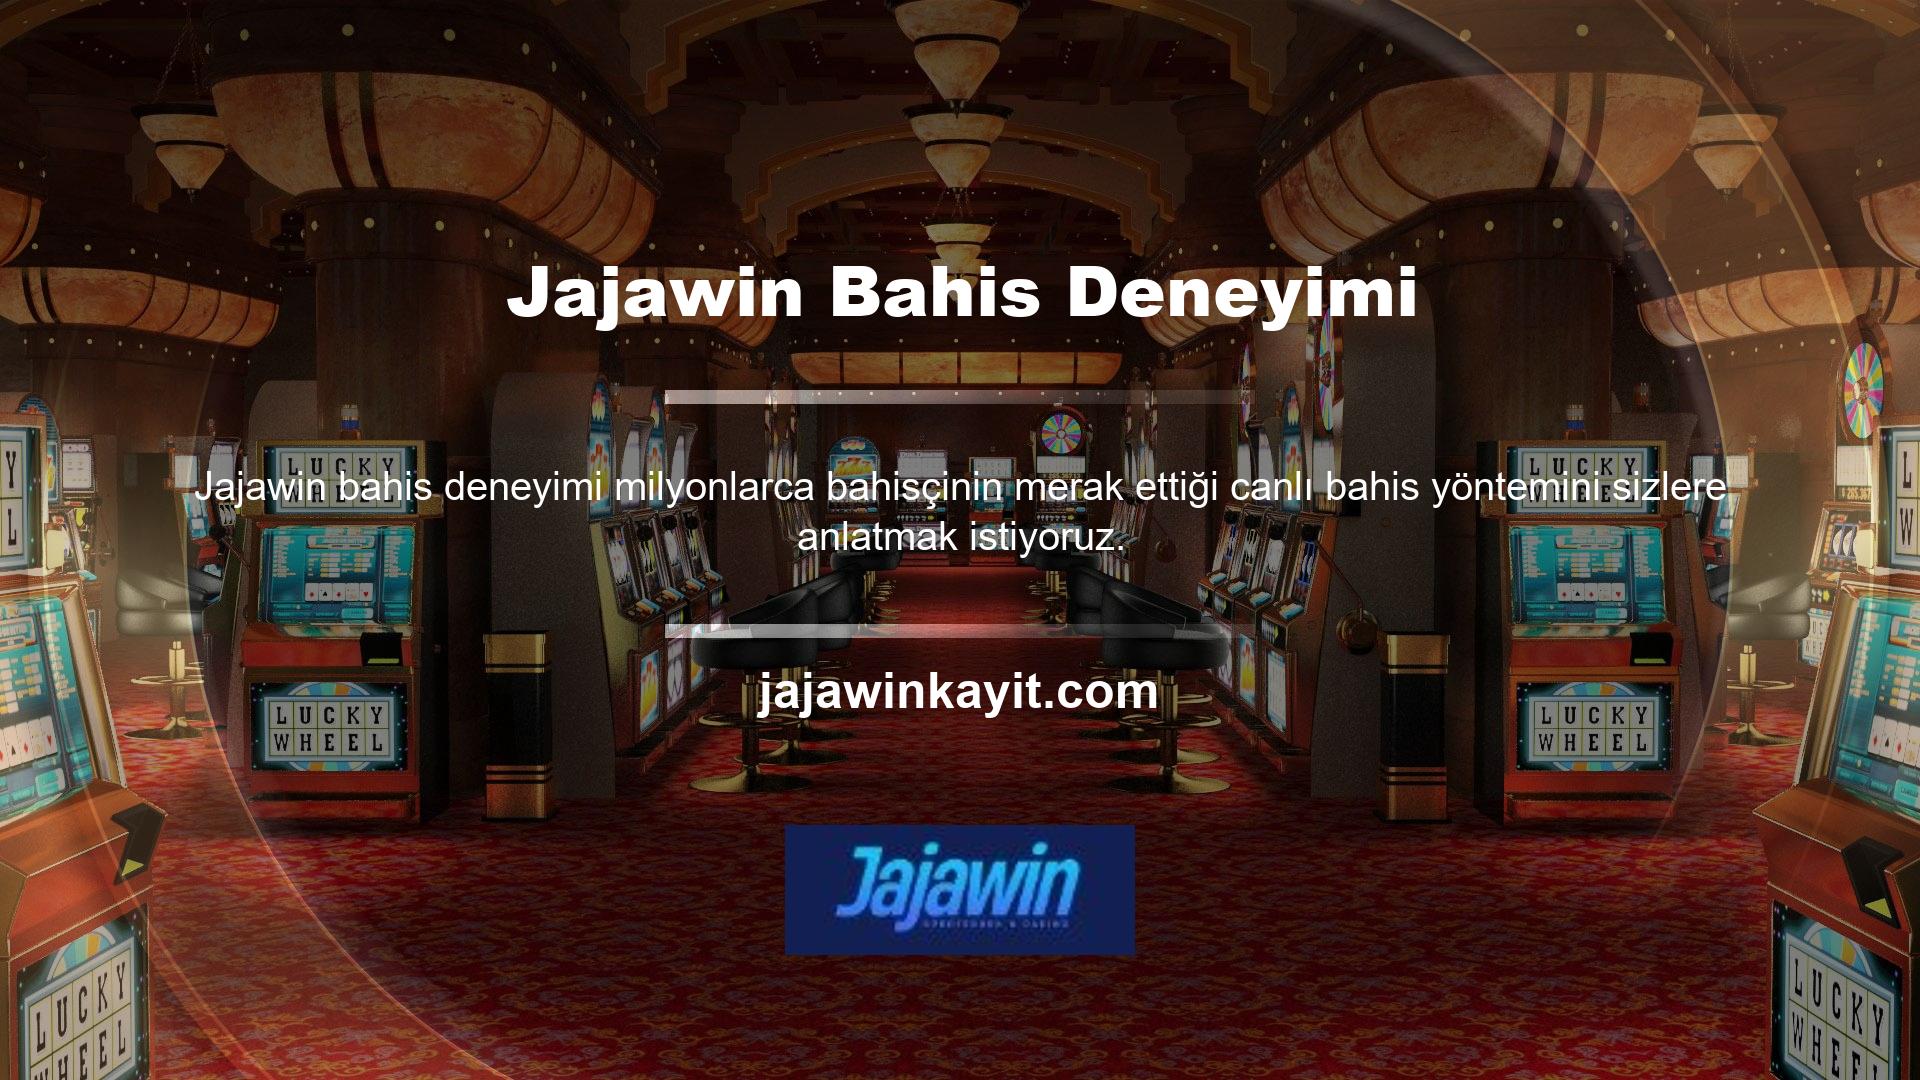 Jajawin bahis deneyimi giriş adresi Bahis Deneyimi Canlı bahis, spor bahis sitesindeki canlı oyunlar sırasında sürekli güncellenen ve değişen bir bahis türüdür